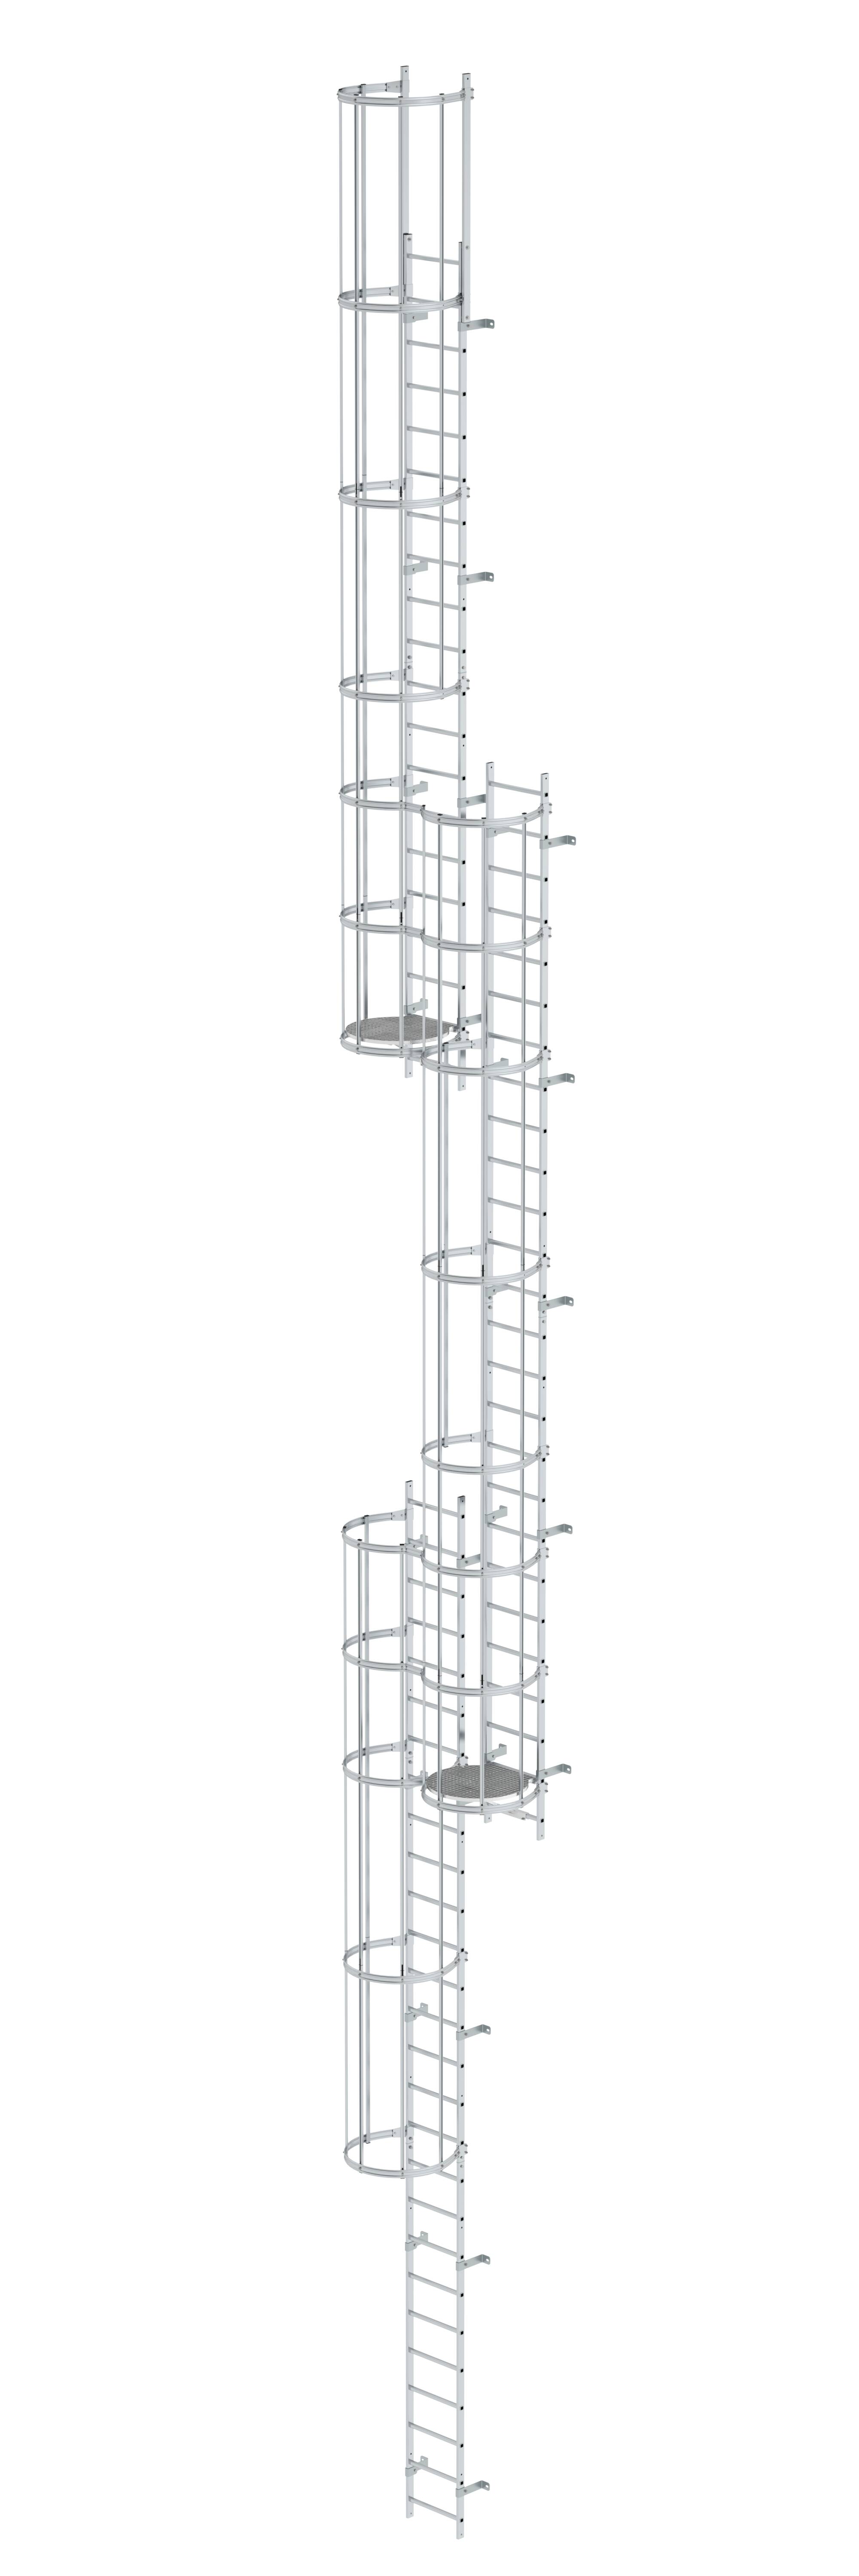 Mehrzügige Steigleiter mit Rückenschutz (Notleiter) Aluminium blank 17,16m